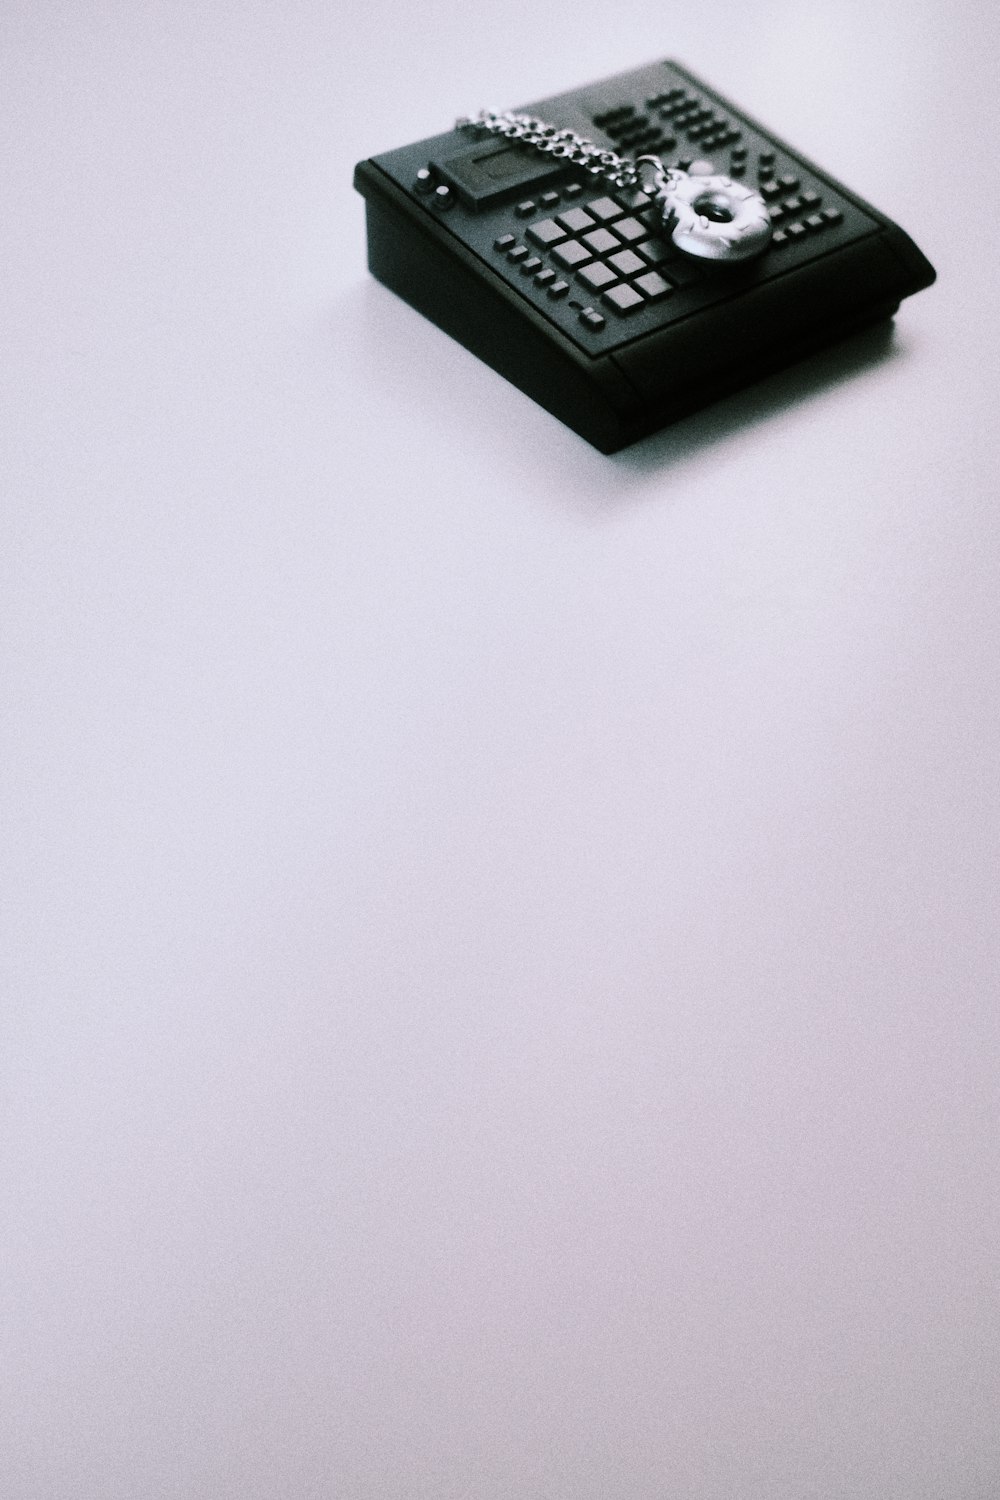 un téléphone portable posé sur une table blanche